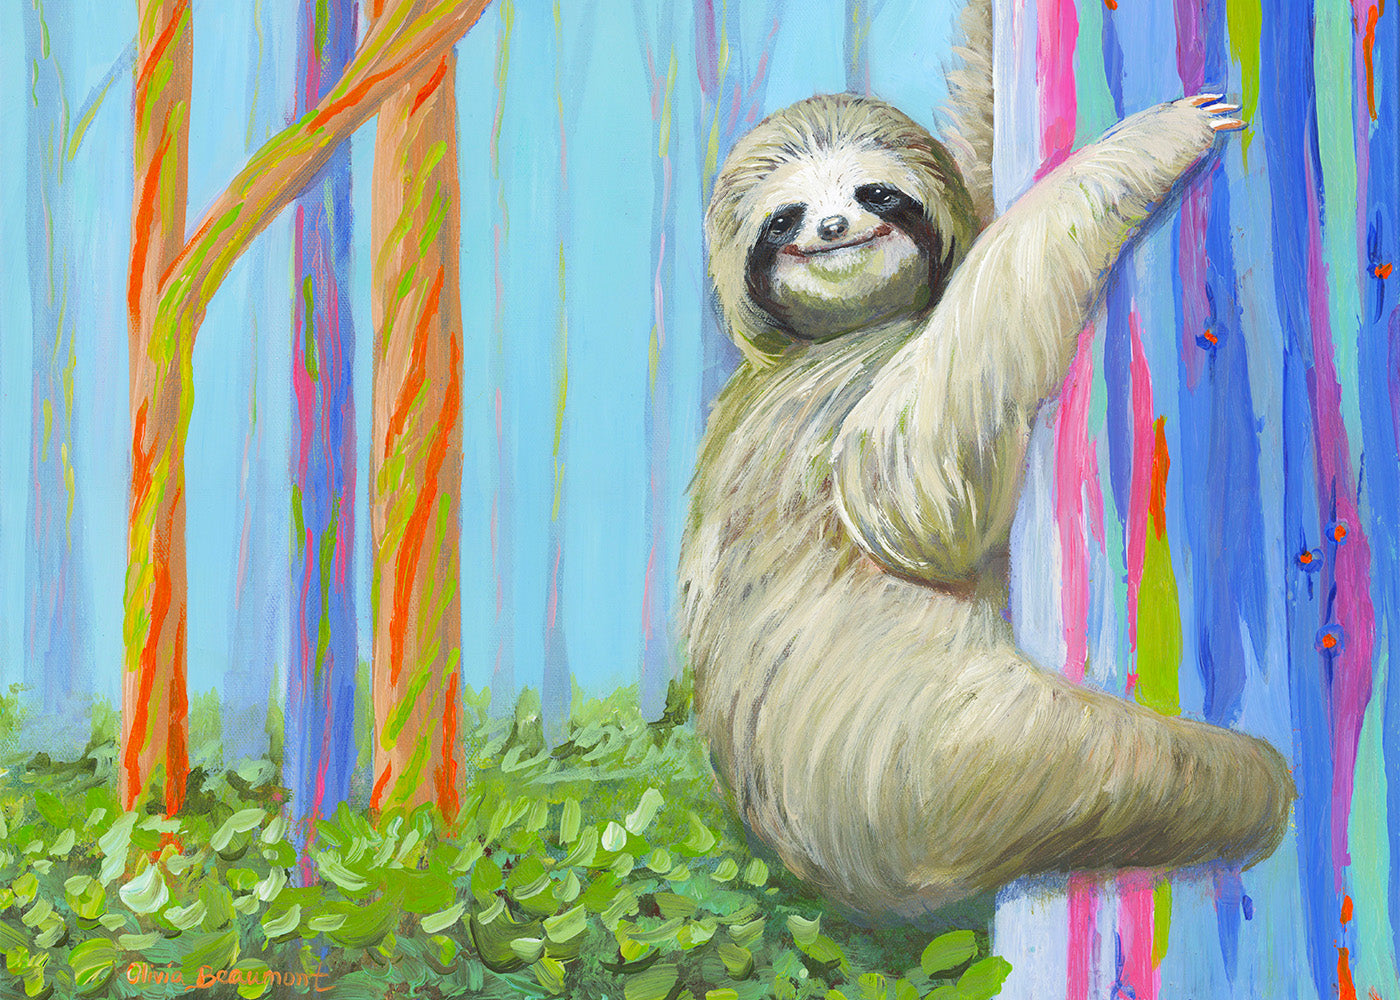 Slow Ride - sloth prints